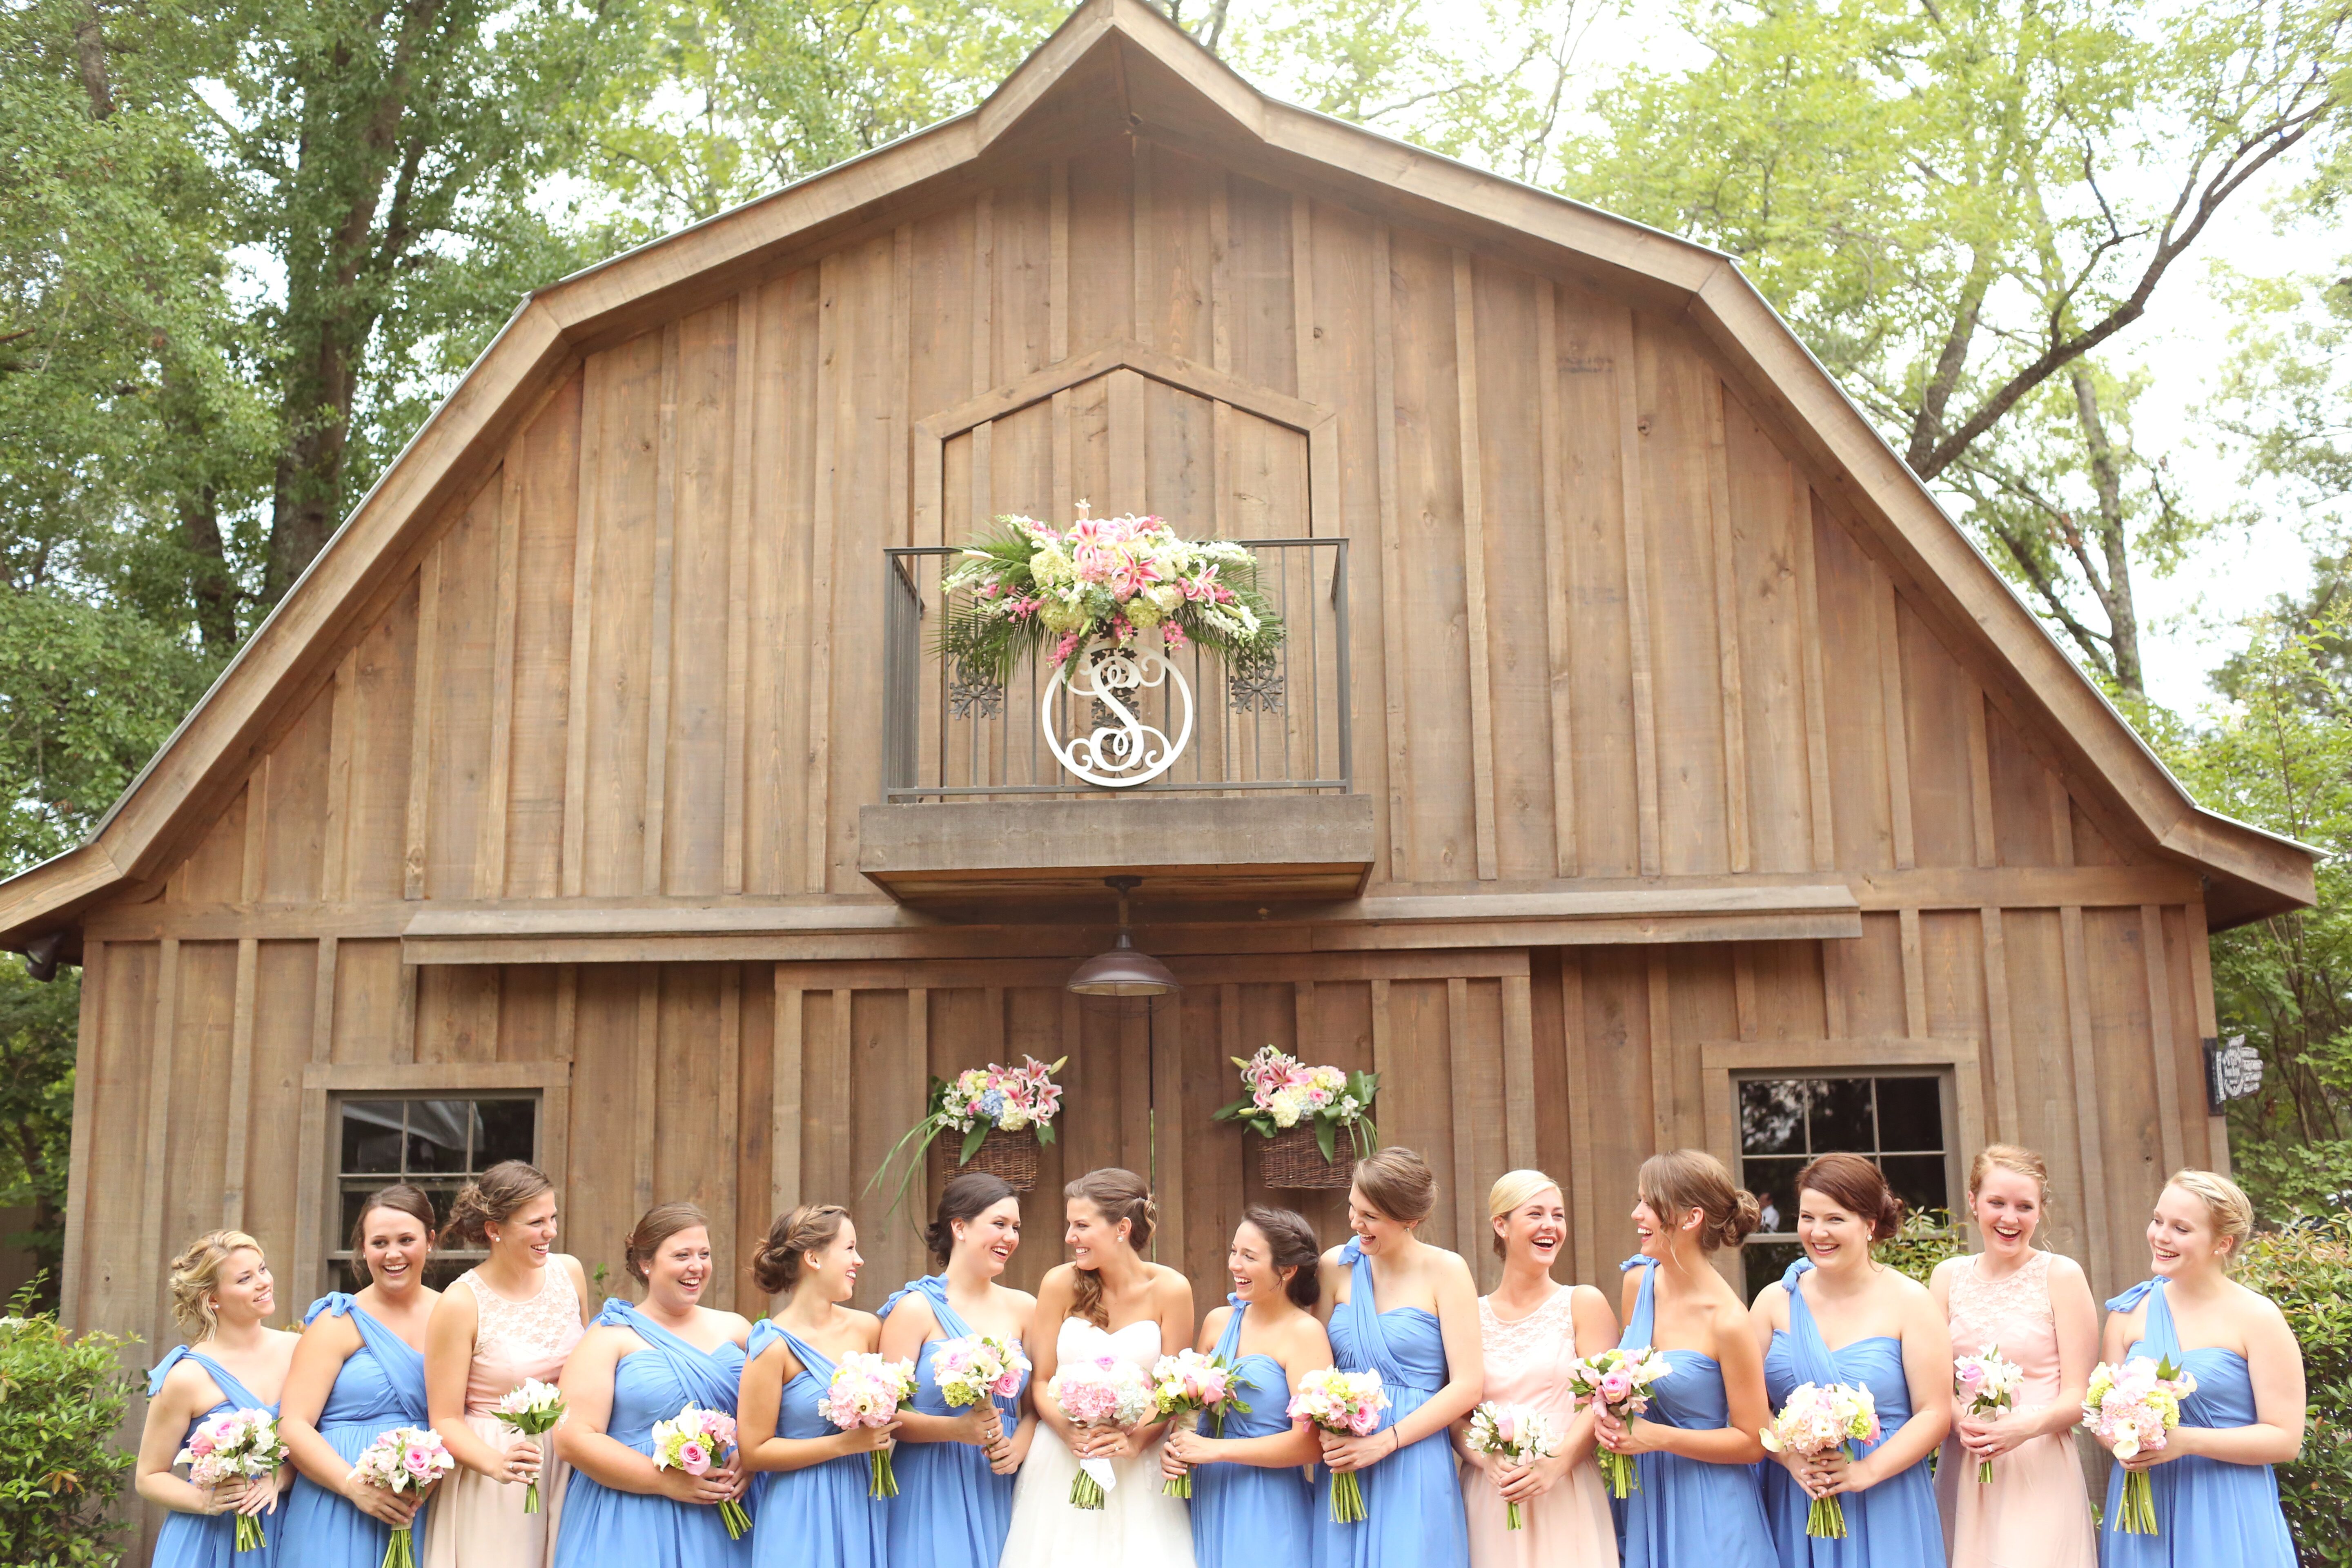 cornflower blue wedding guest dress